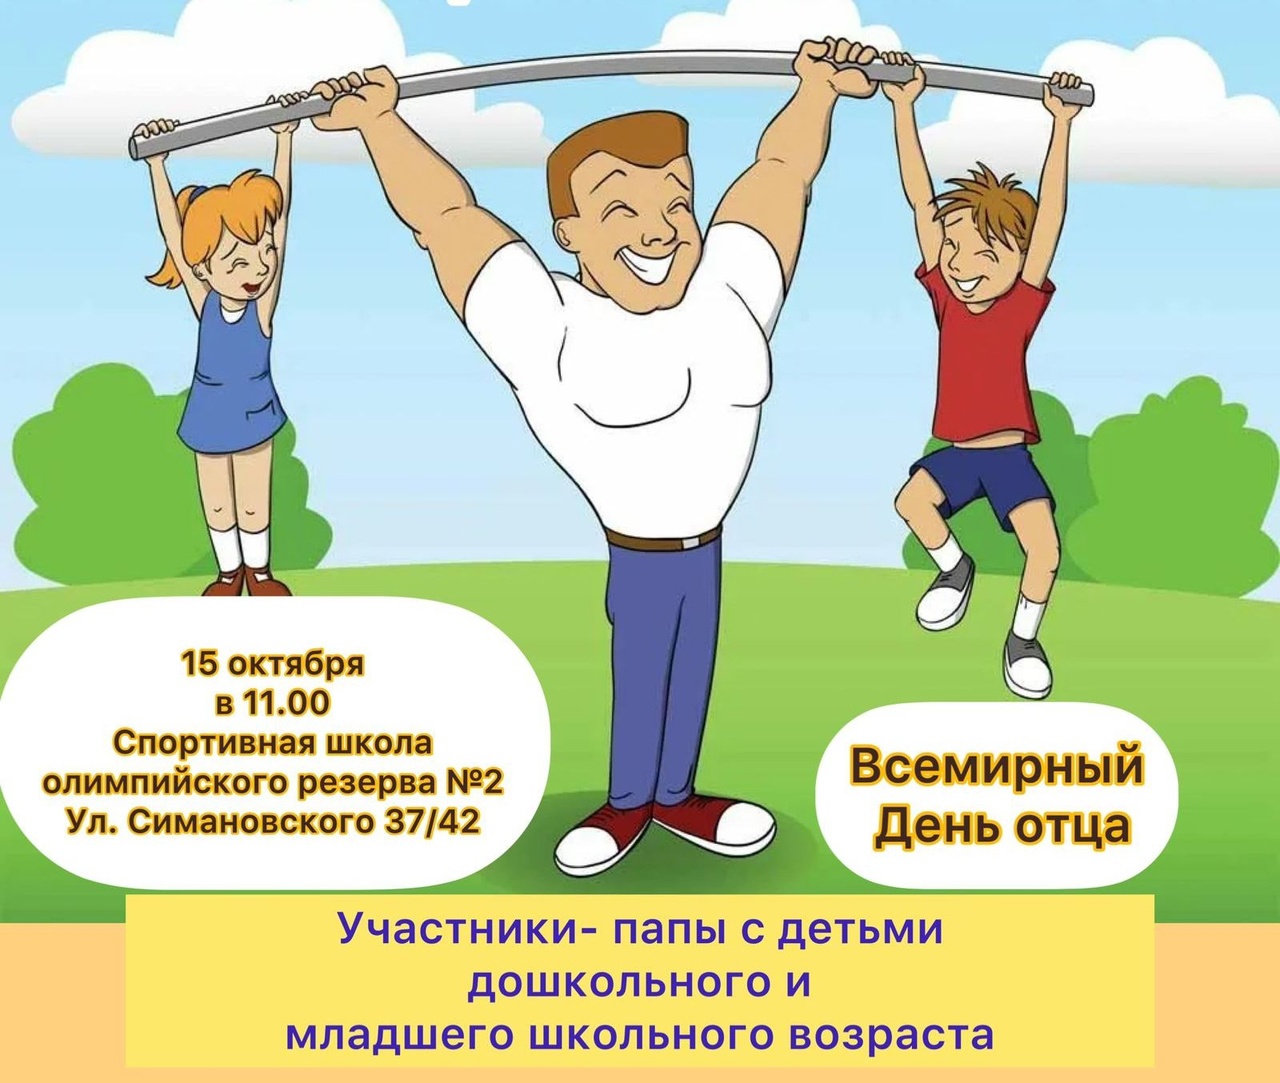 В Костроме проведут спортивный праздник по случаю Дня отца